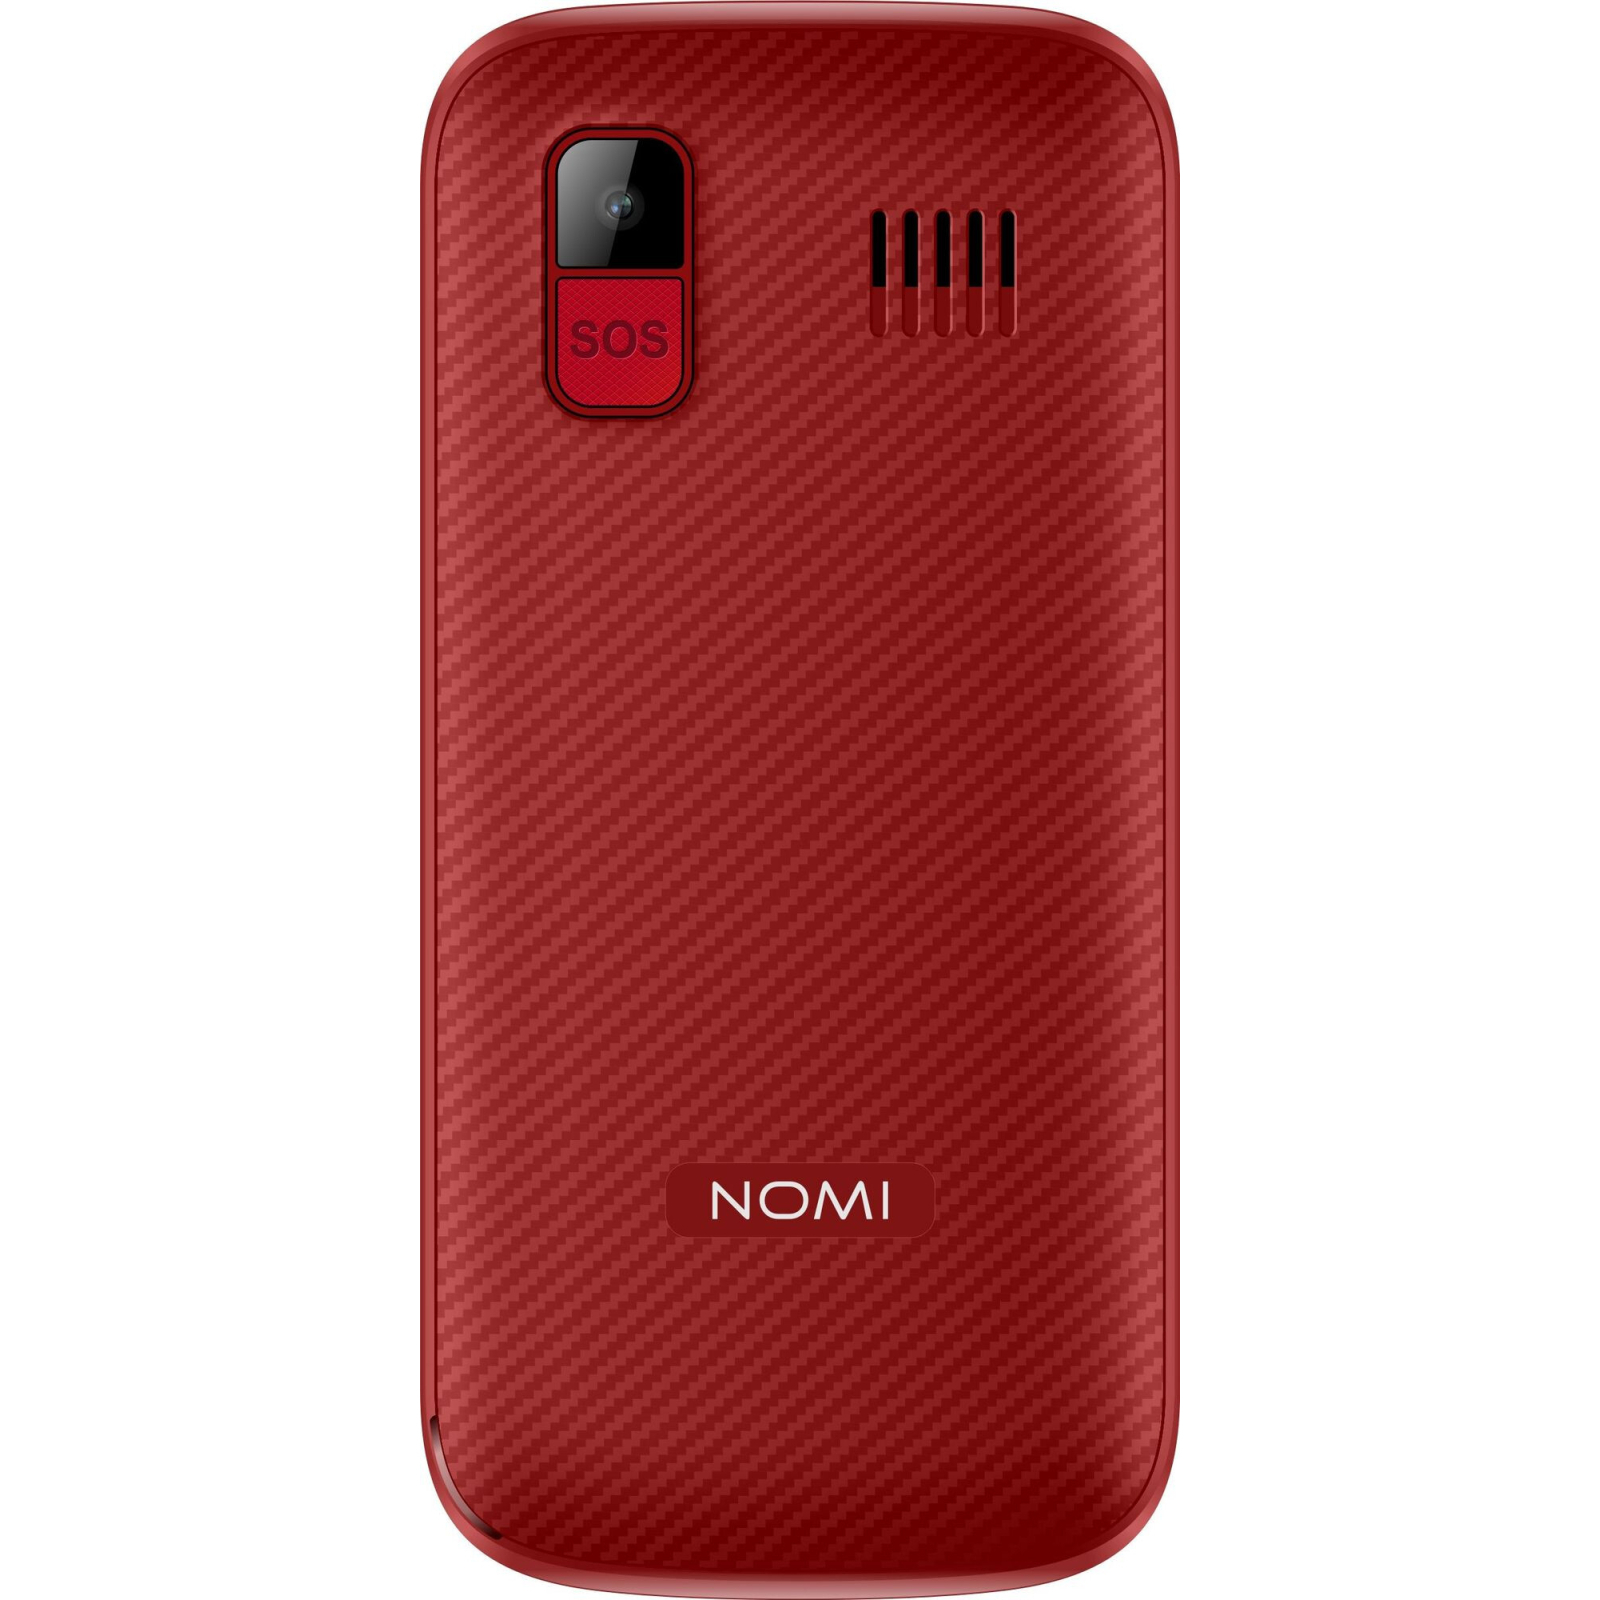 Мобильный телефон Nomi i220 Black изображение 4